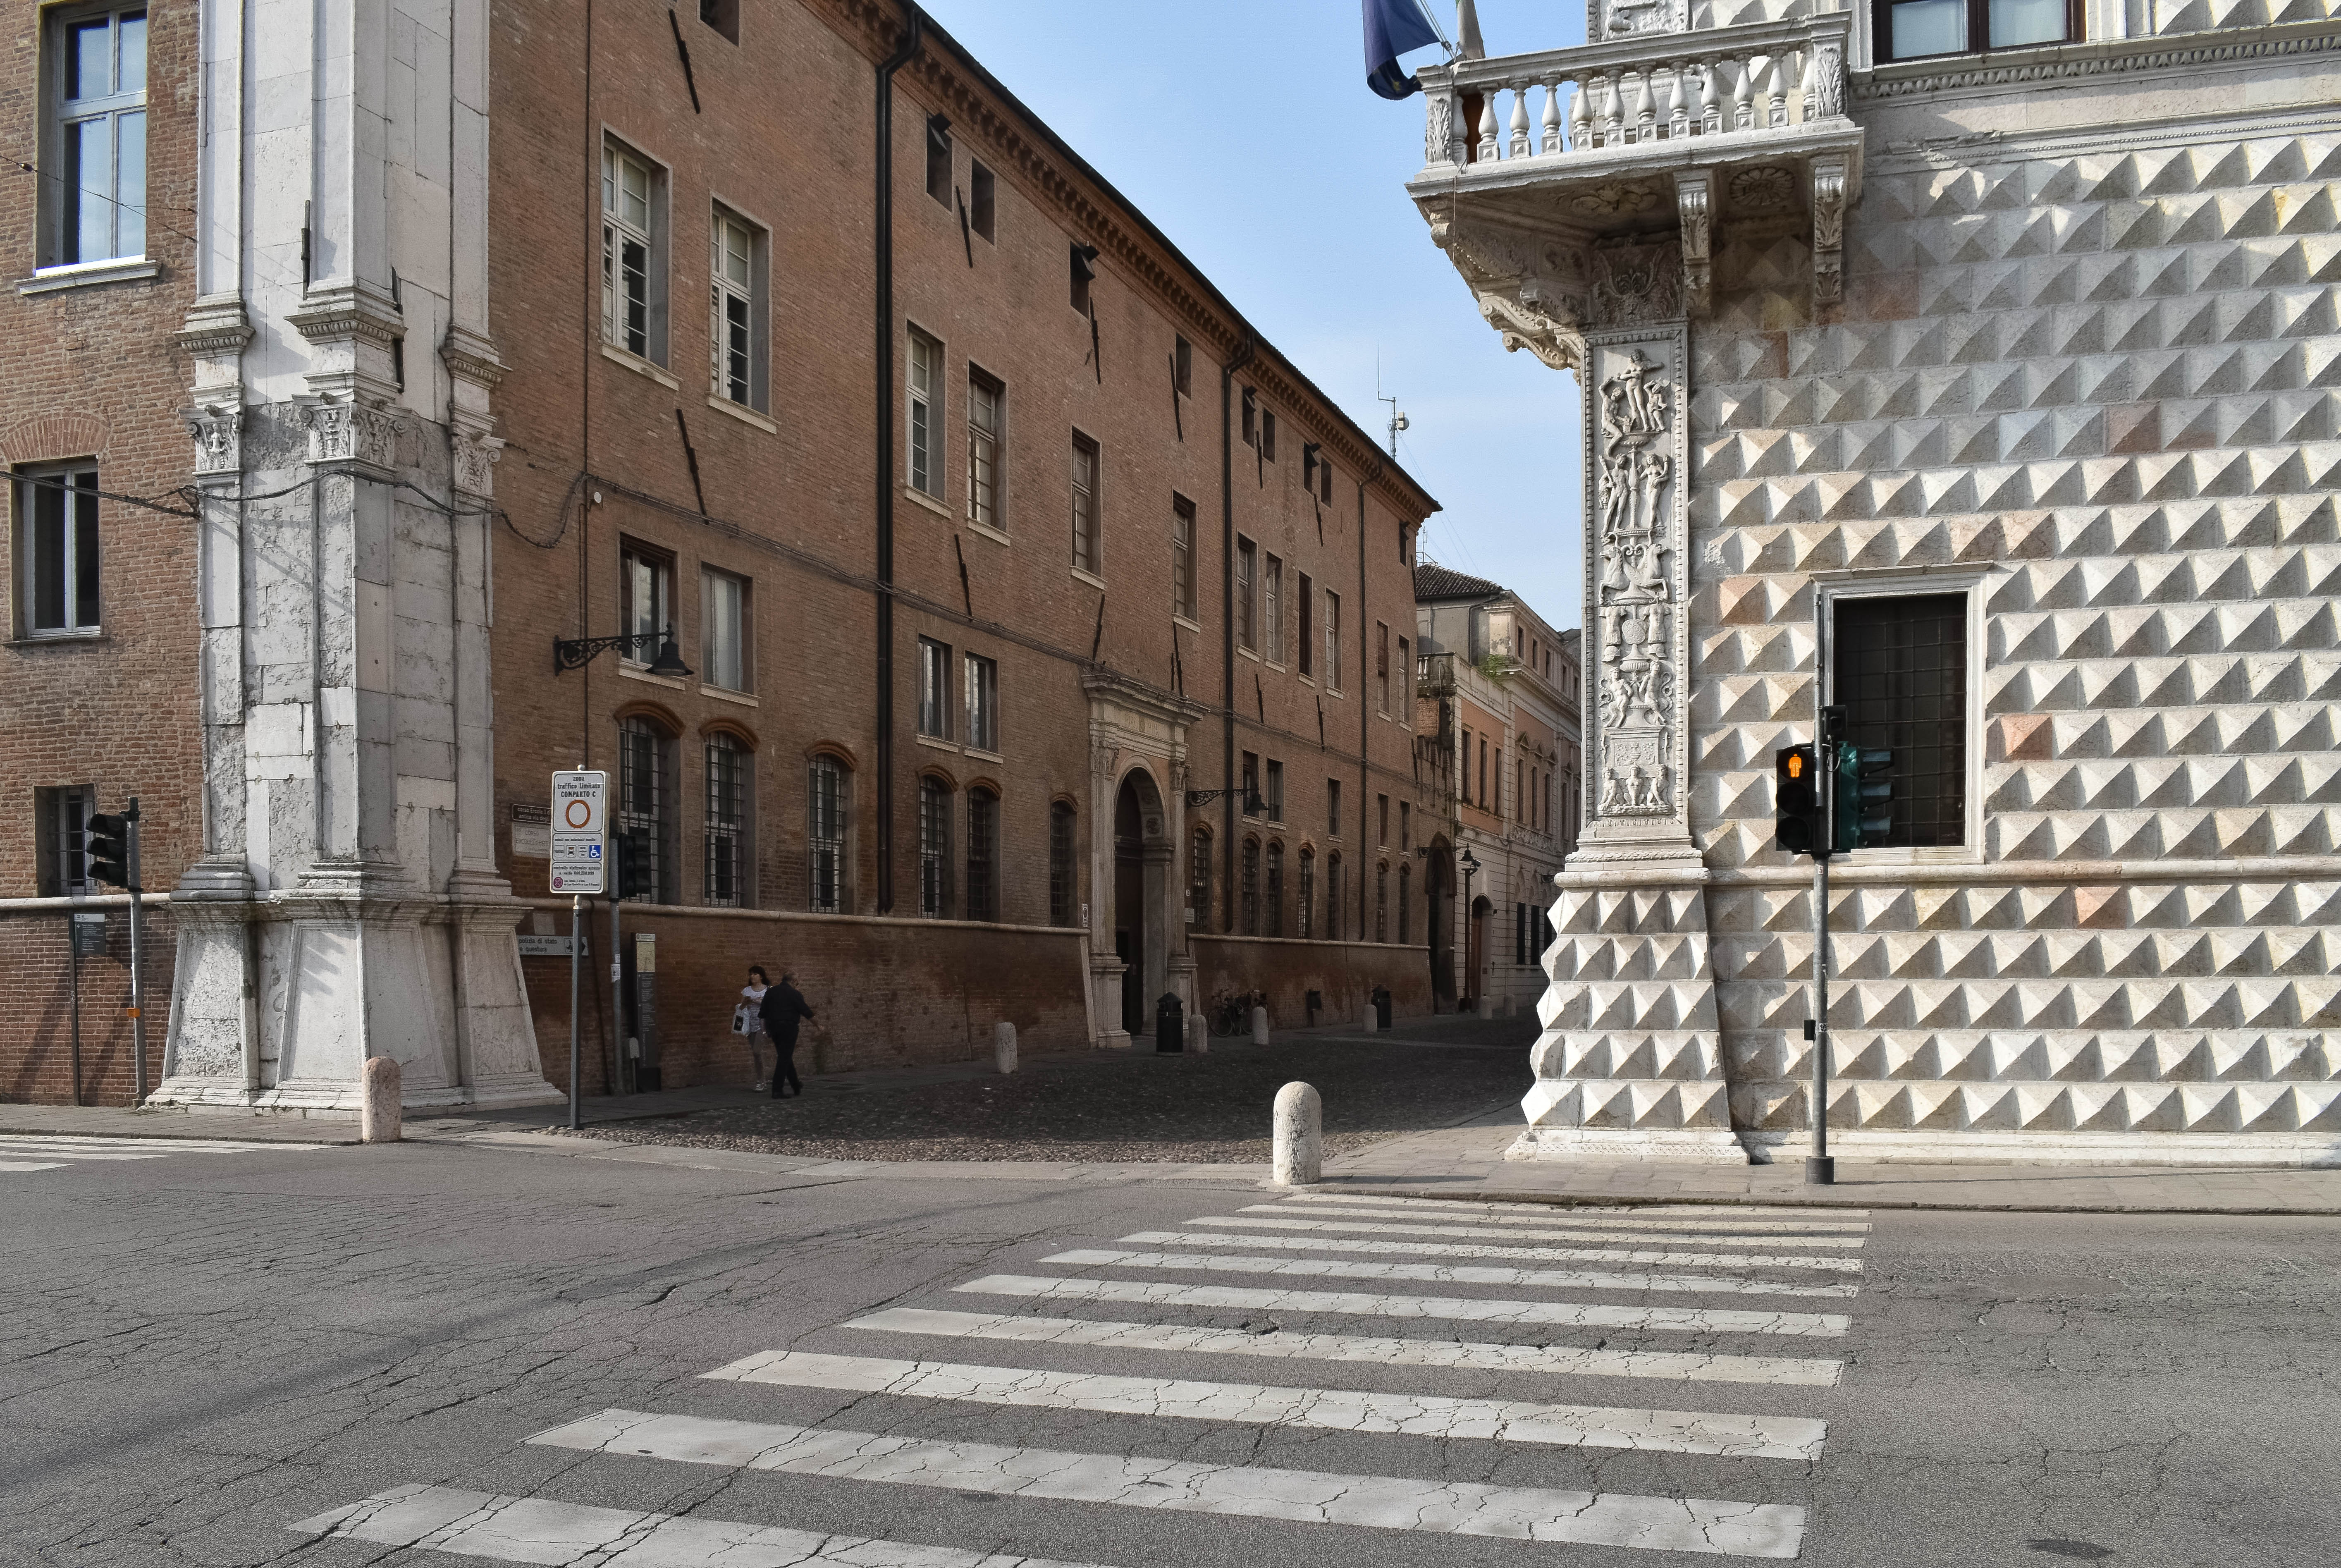 foto: https://upload.wikimedia.org/wikipedia/commons/6/6f/Palazzo_dei_Diamanti_e_Palazzo_Turchi_di_Bagno_%28Ferrara%29.jpg